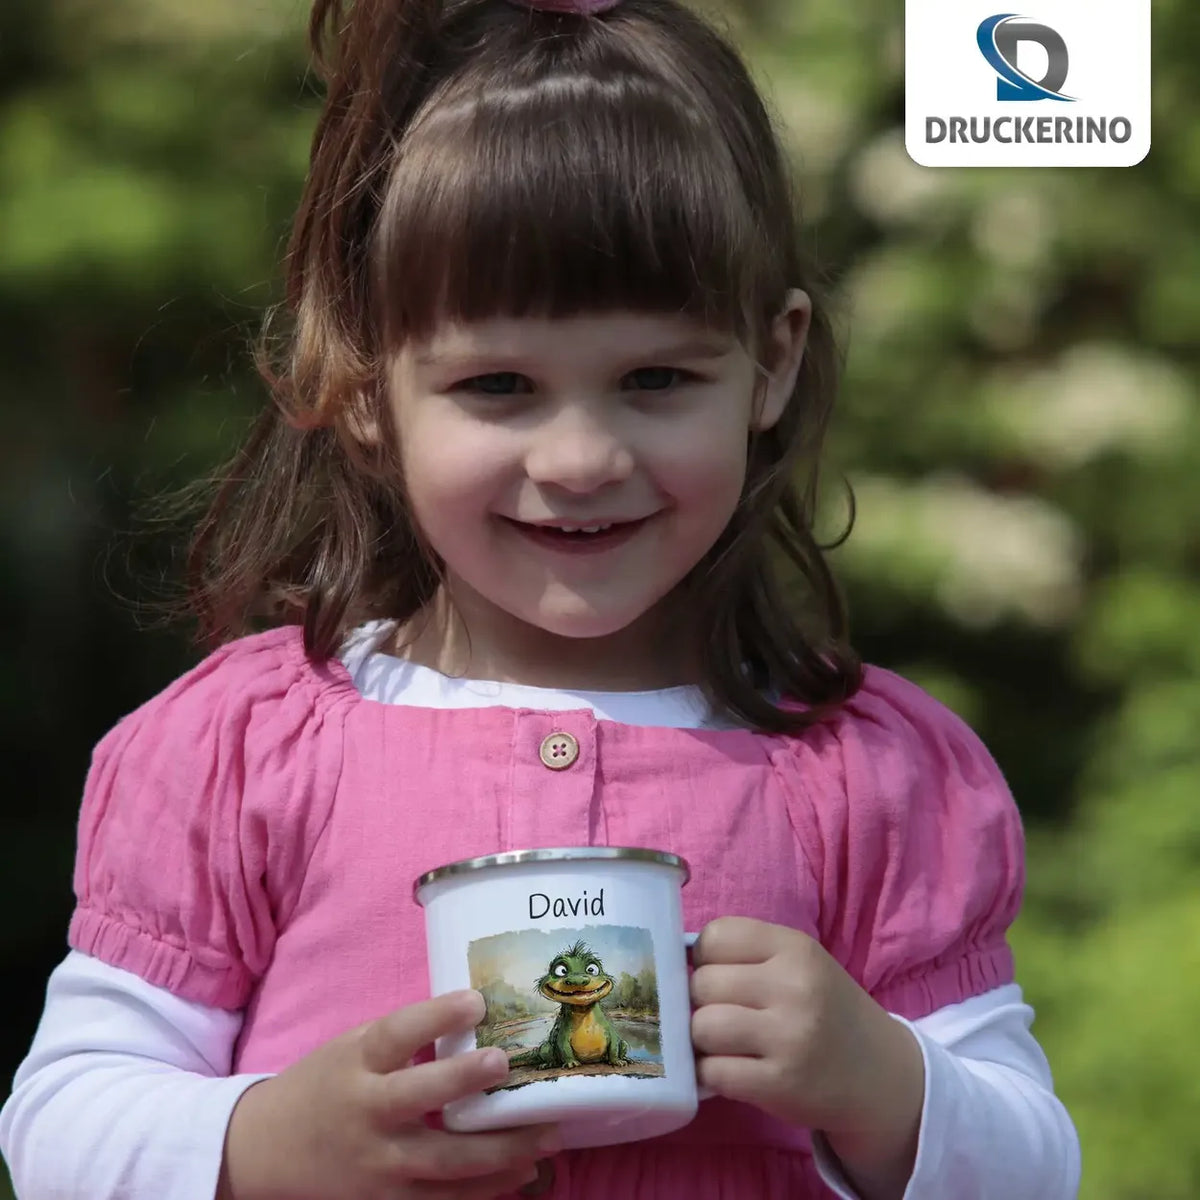 Zauberdrache Emaille Tasse für Kinder personalisiert Emailletasse Druckerino   